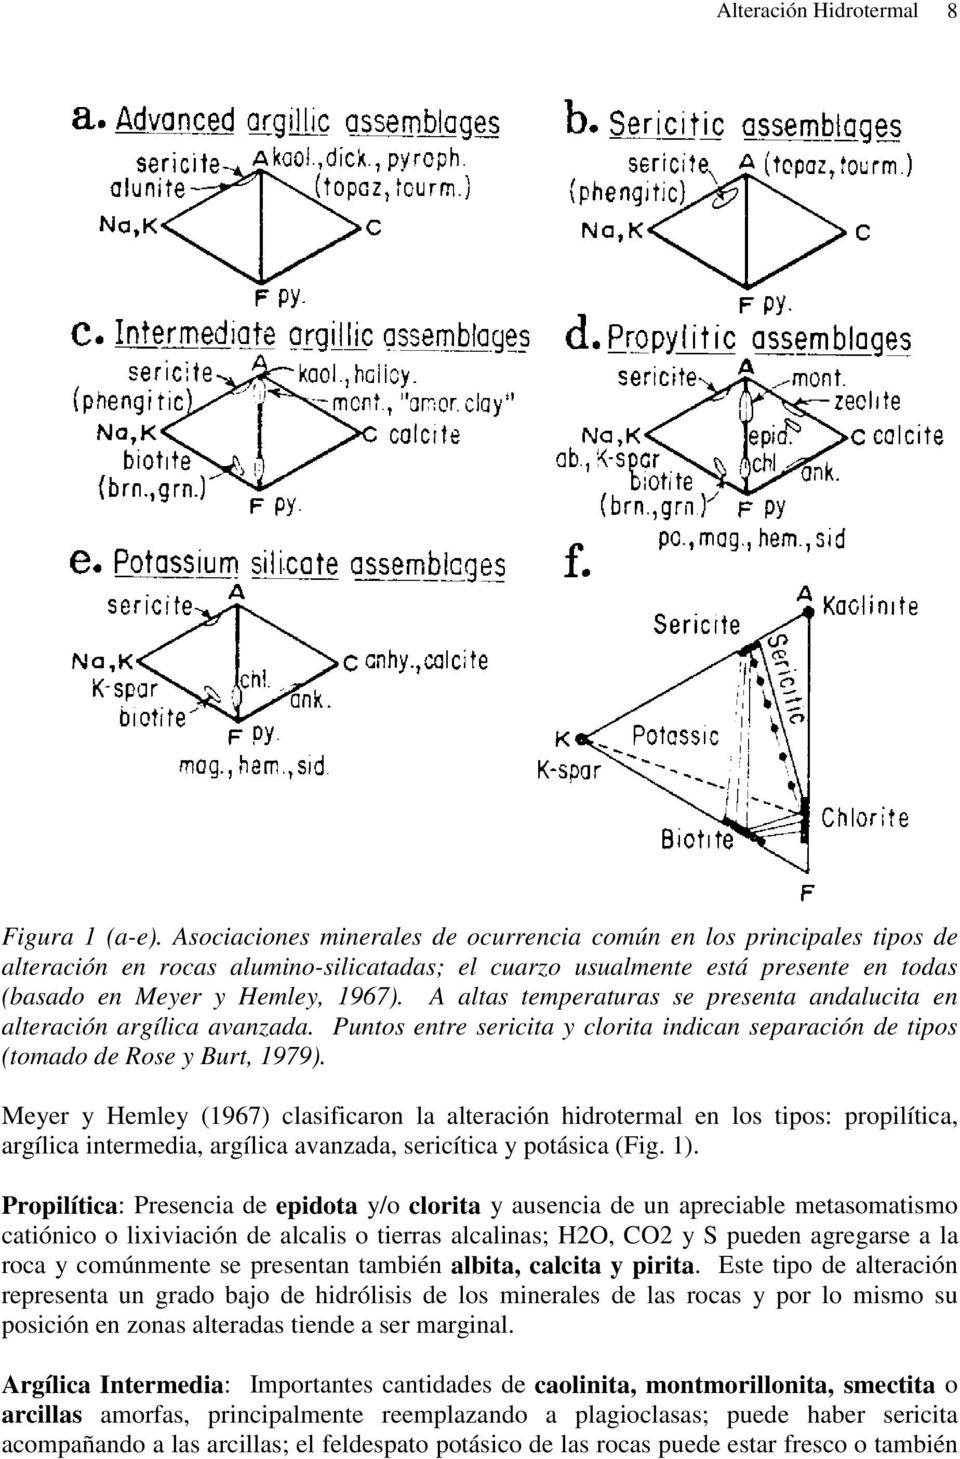 A altas temperaturas se presenta andalucita en alteración argílica avanzada. Puntos entre sericita y clorita indican separación de tipos (tomado de Rose y Burt, 1979).